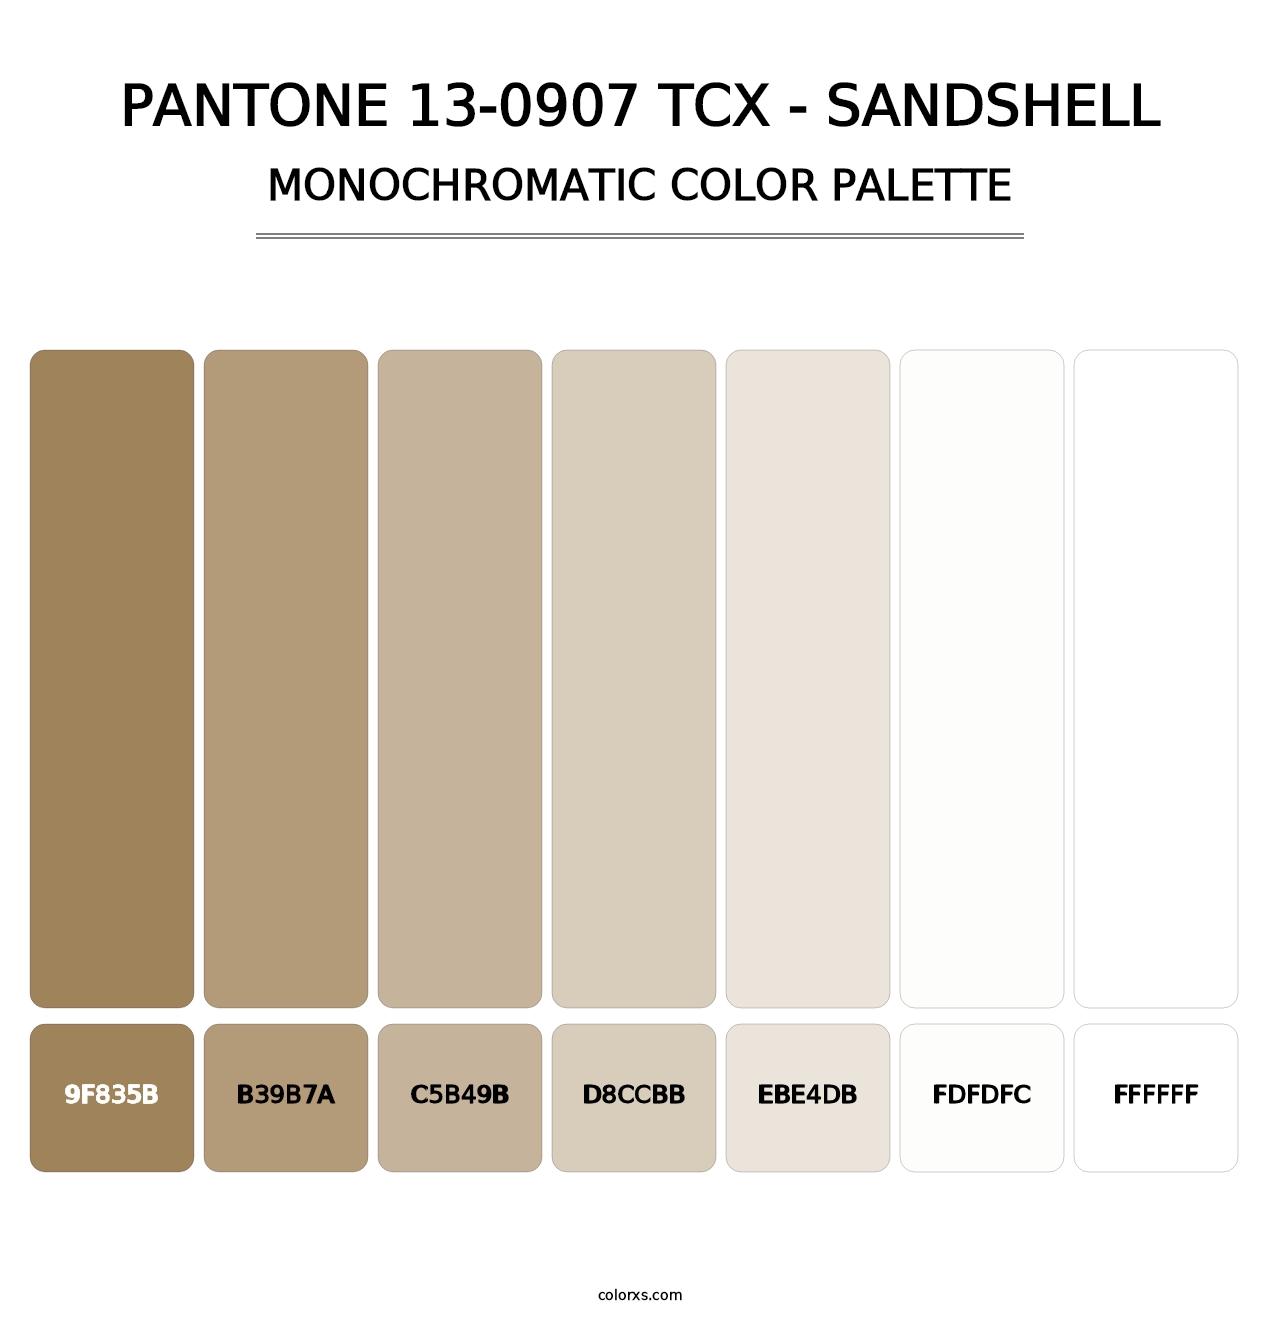 PANTONE 13-0907 TCX - Sandshell - Monochromatic Color Palette